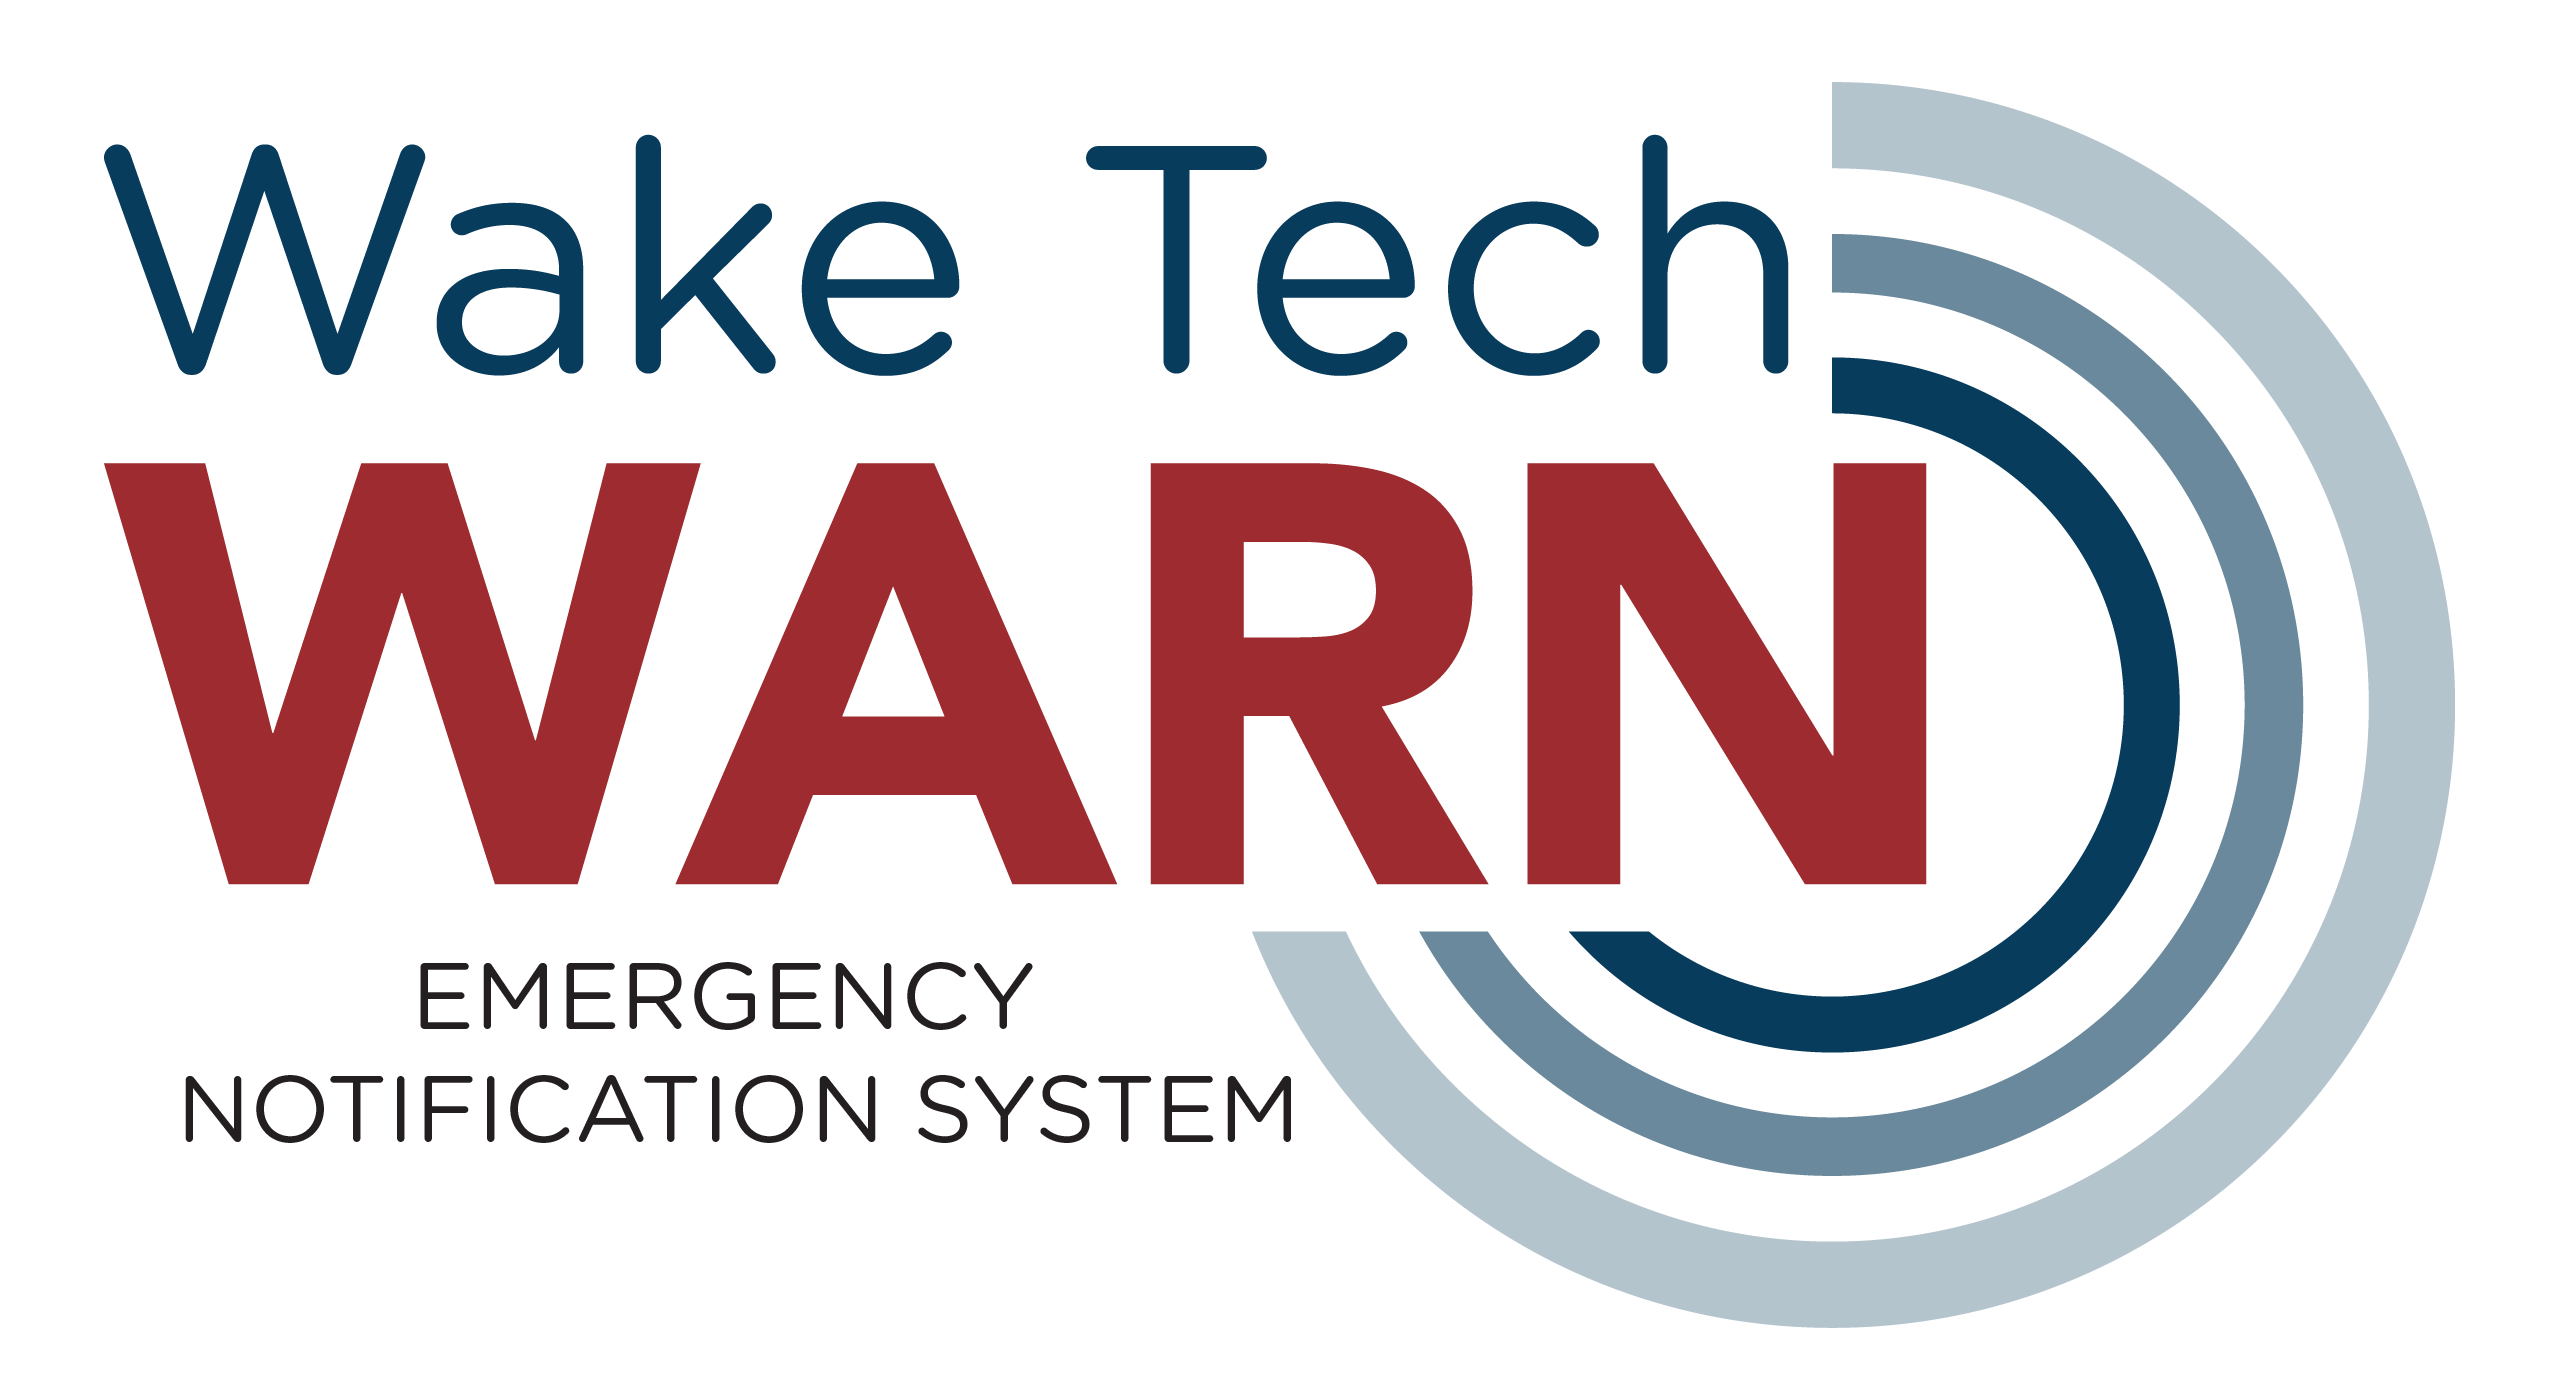 Wake Tech Warn signup